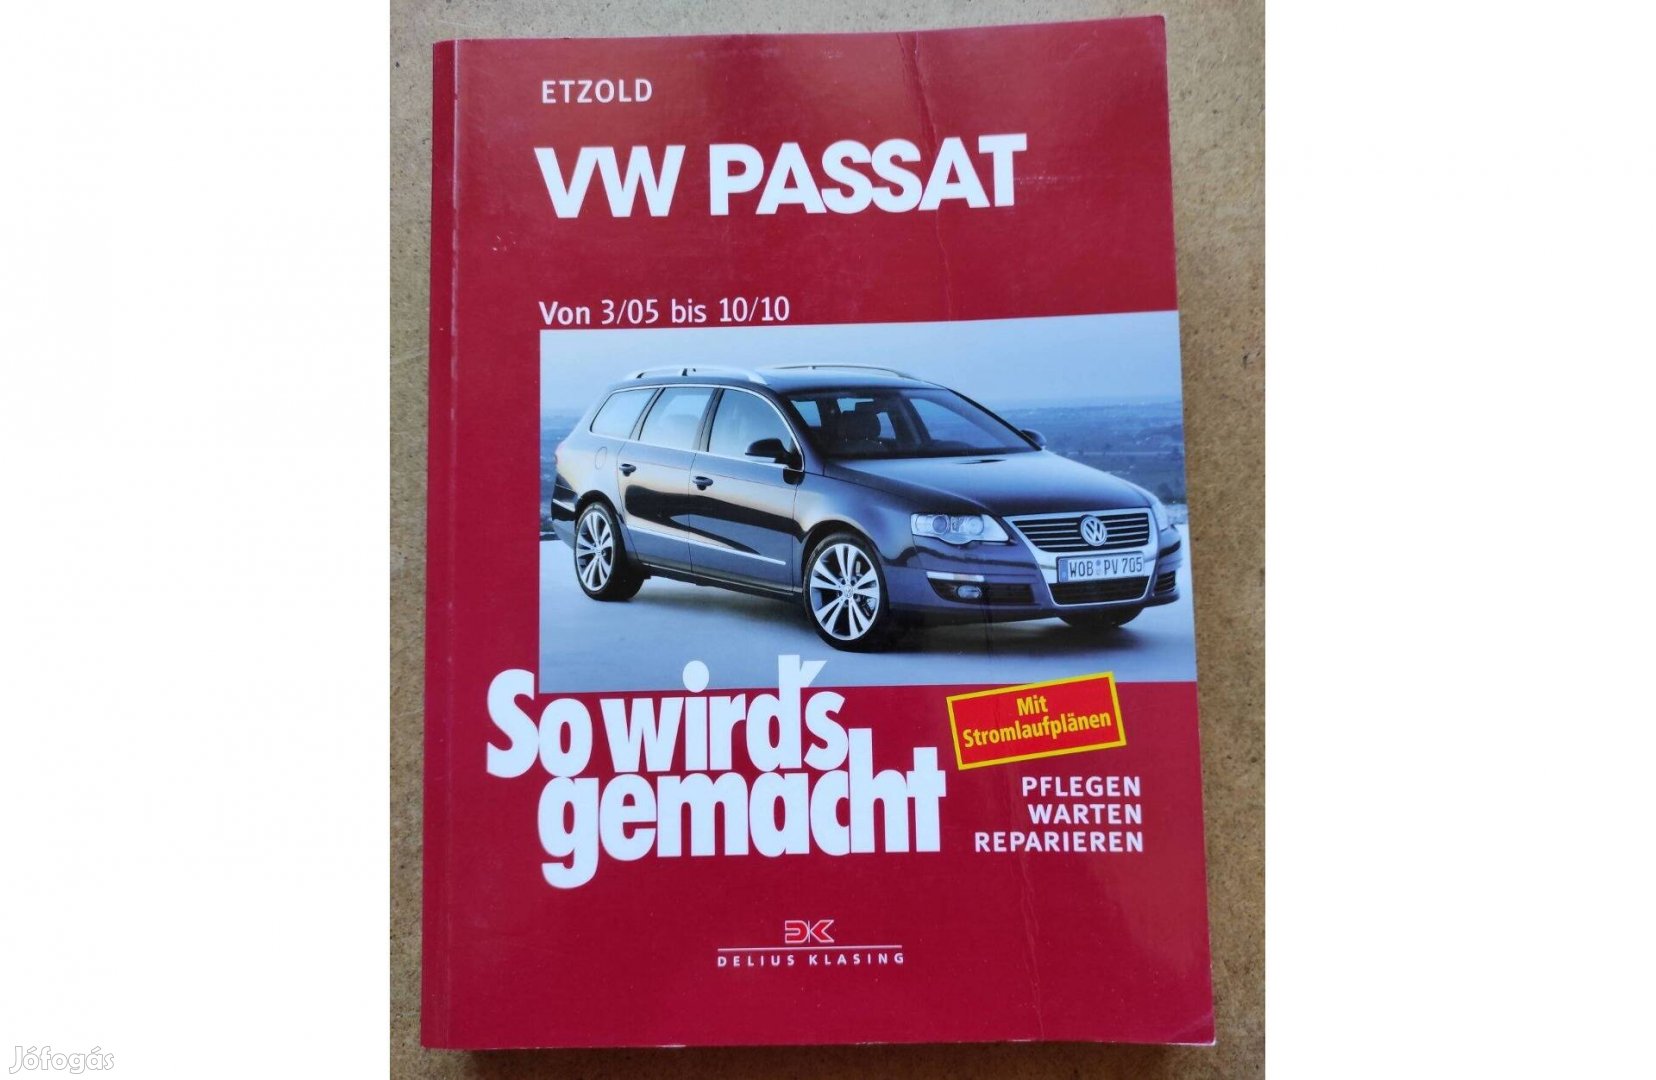 Volkswagen Vw. Passat javítási karbantartási könyv. 2010.10-